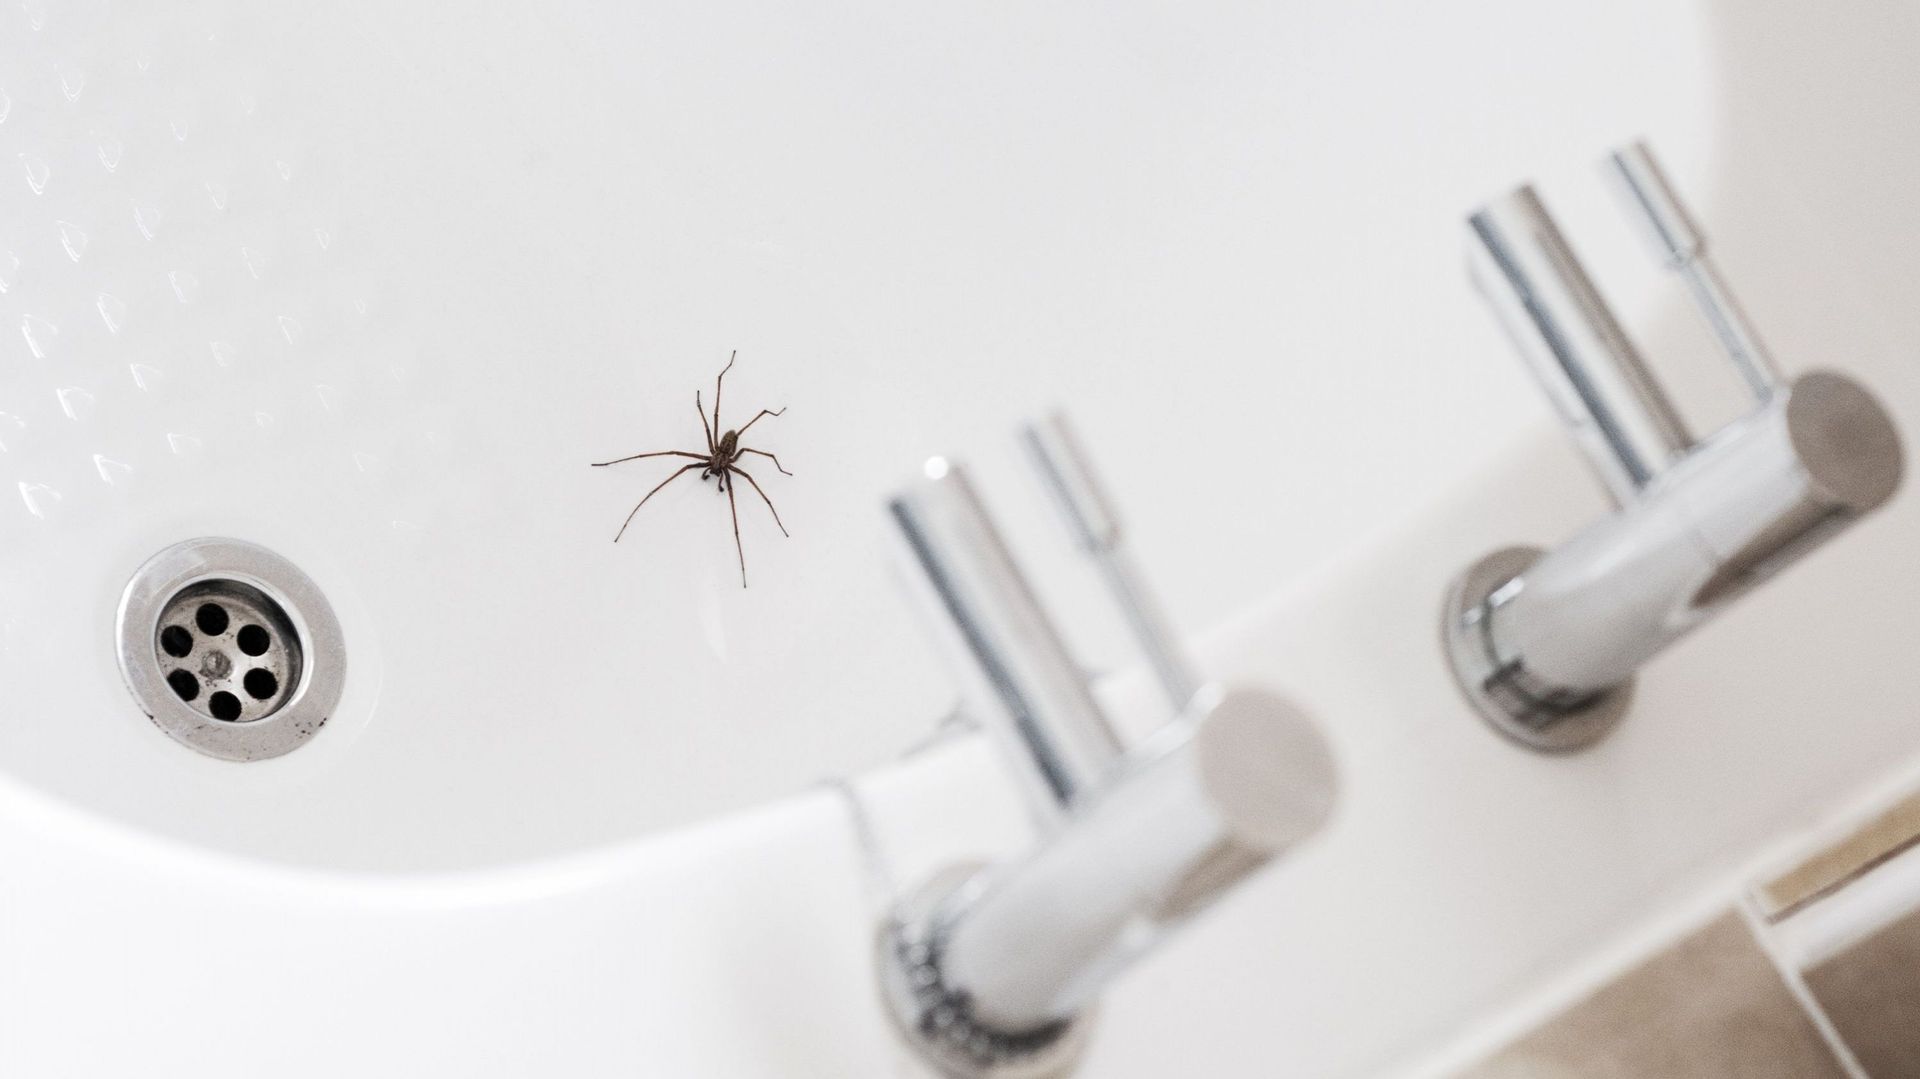 Comment faire pour éloigner les araignées de la maison?